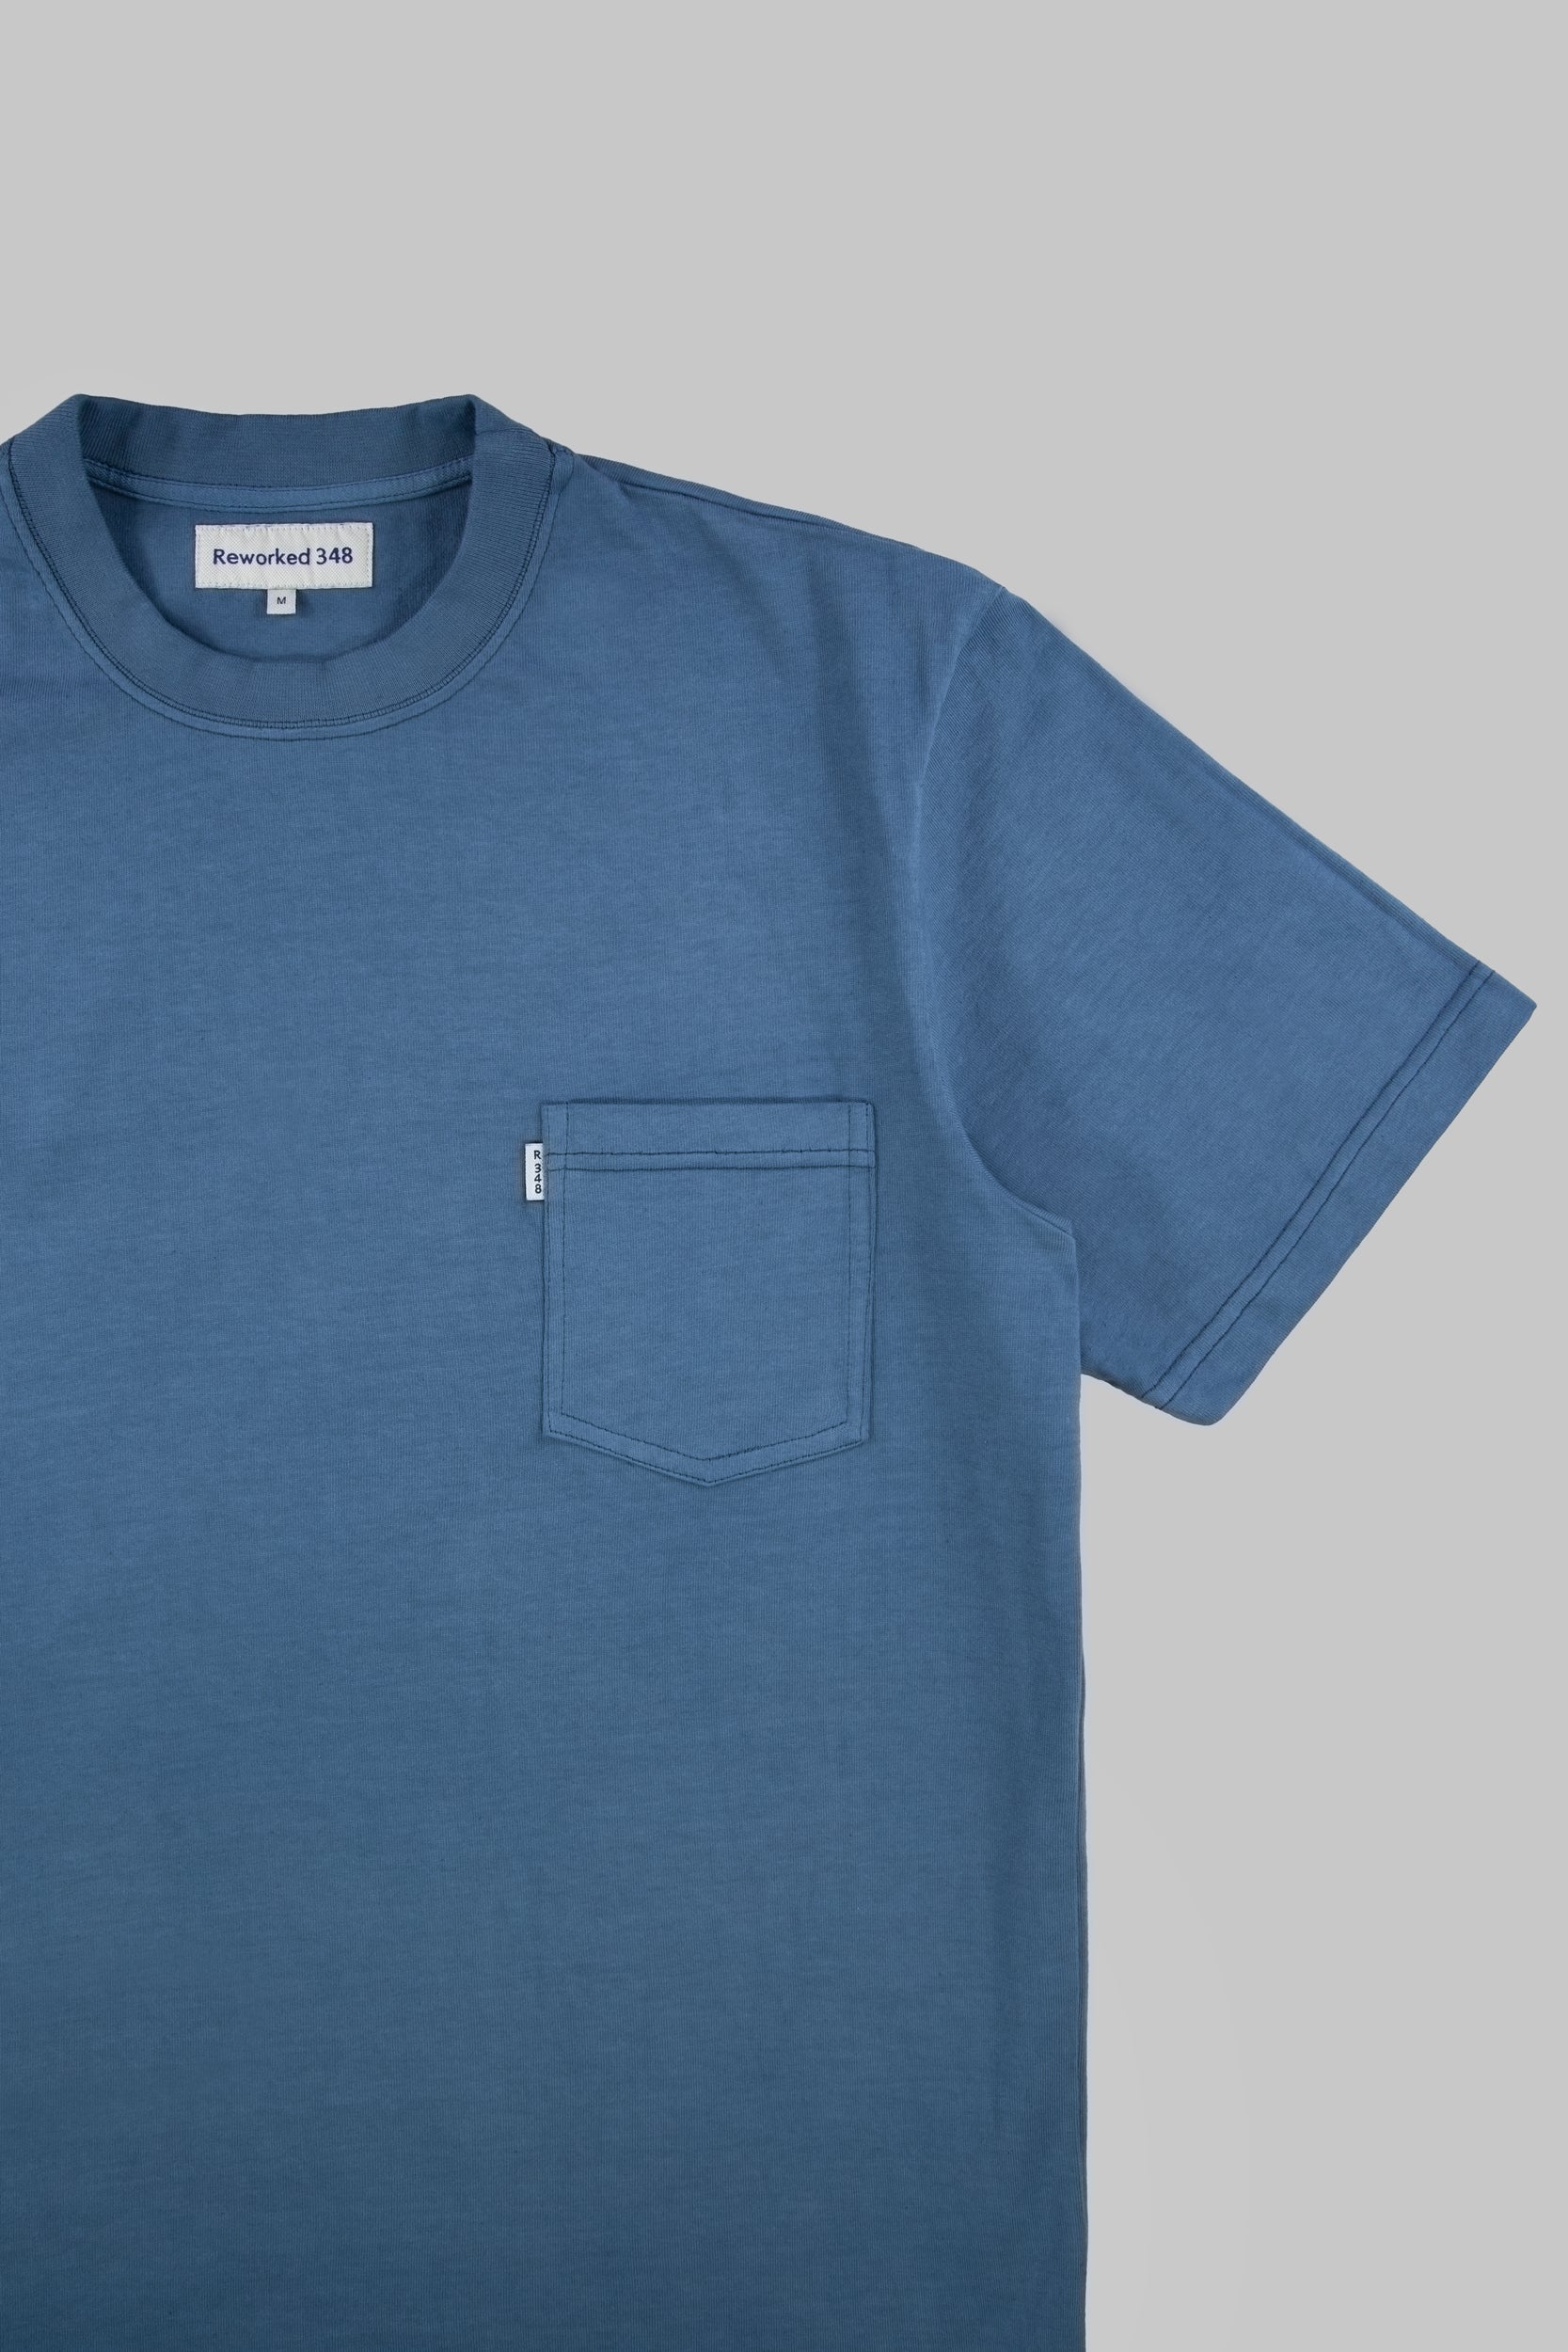 Pocket T-Shirt Vintage Blue